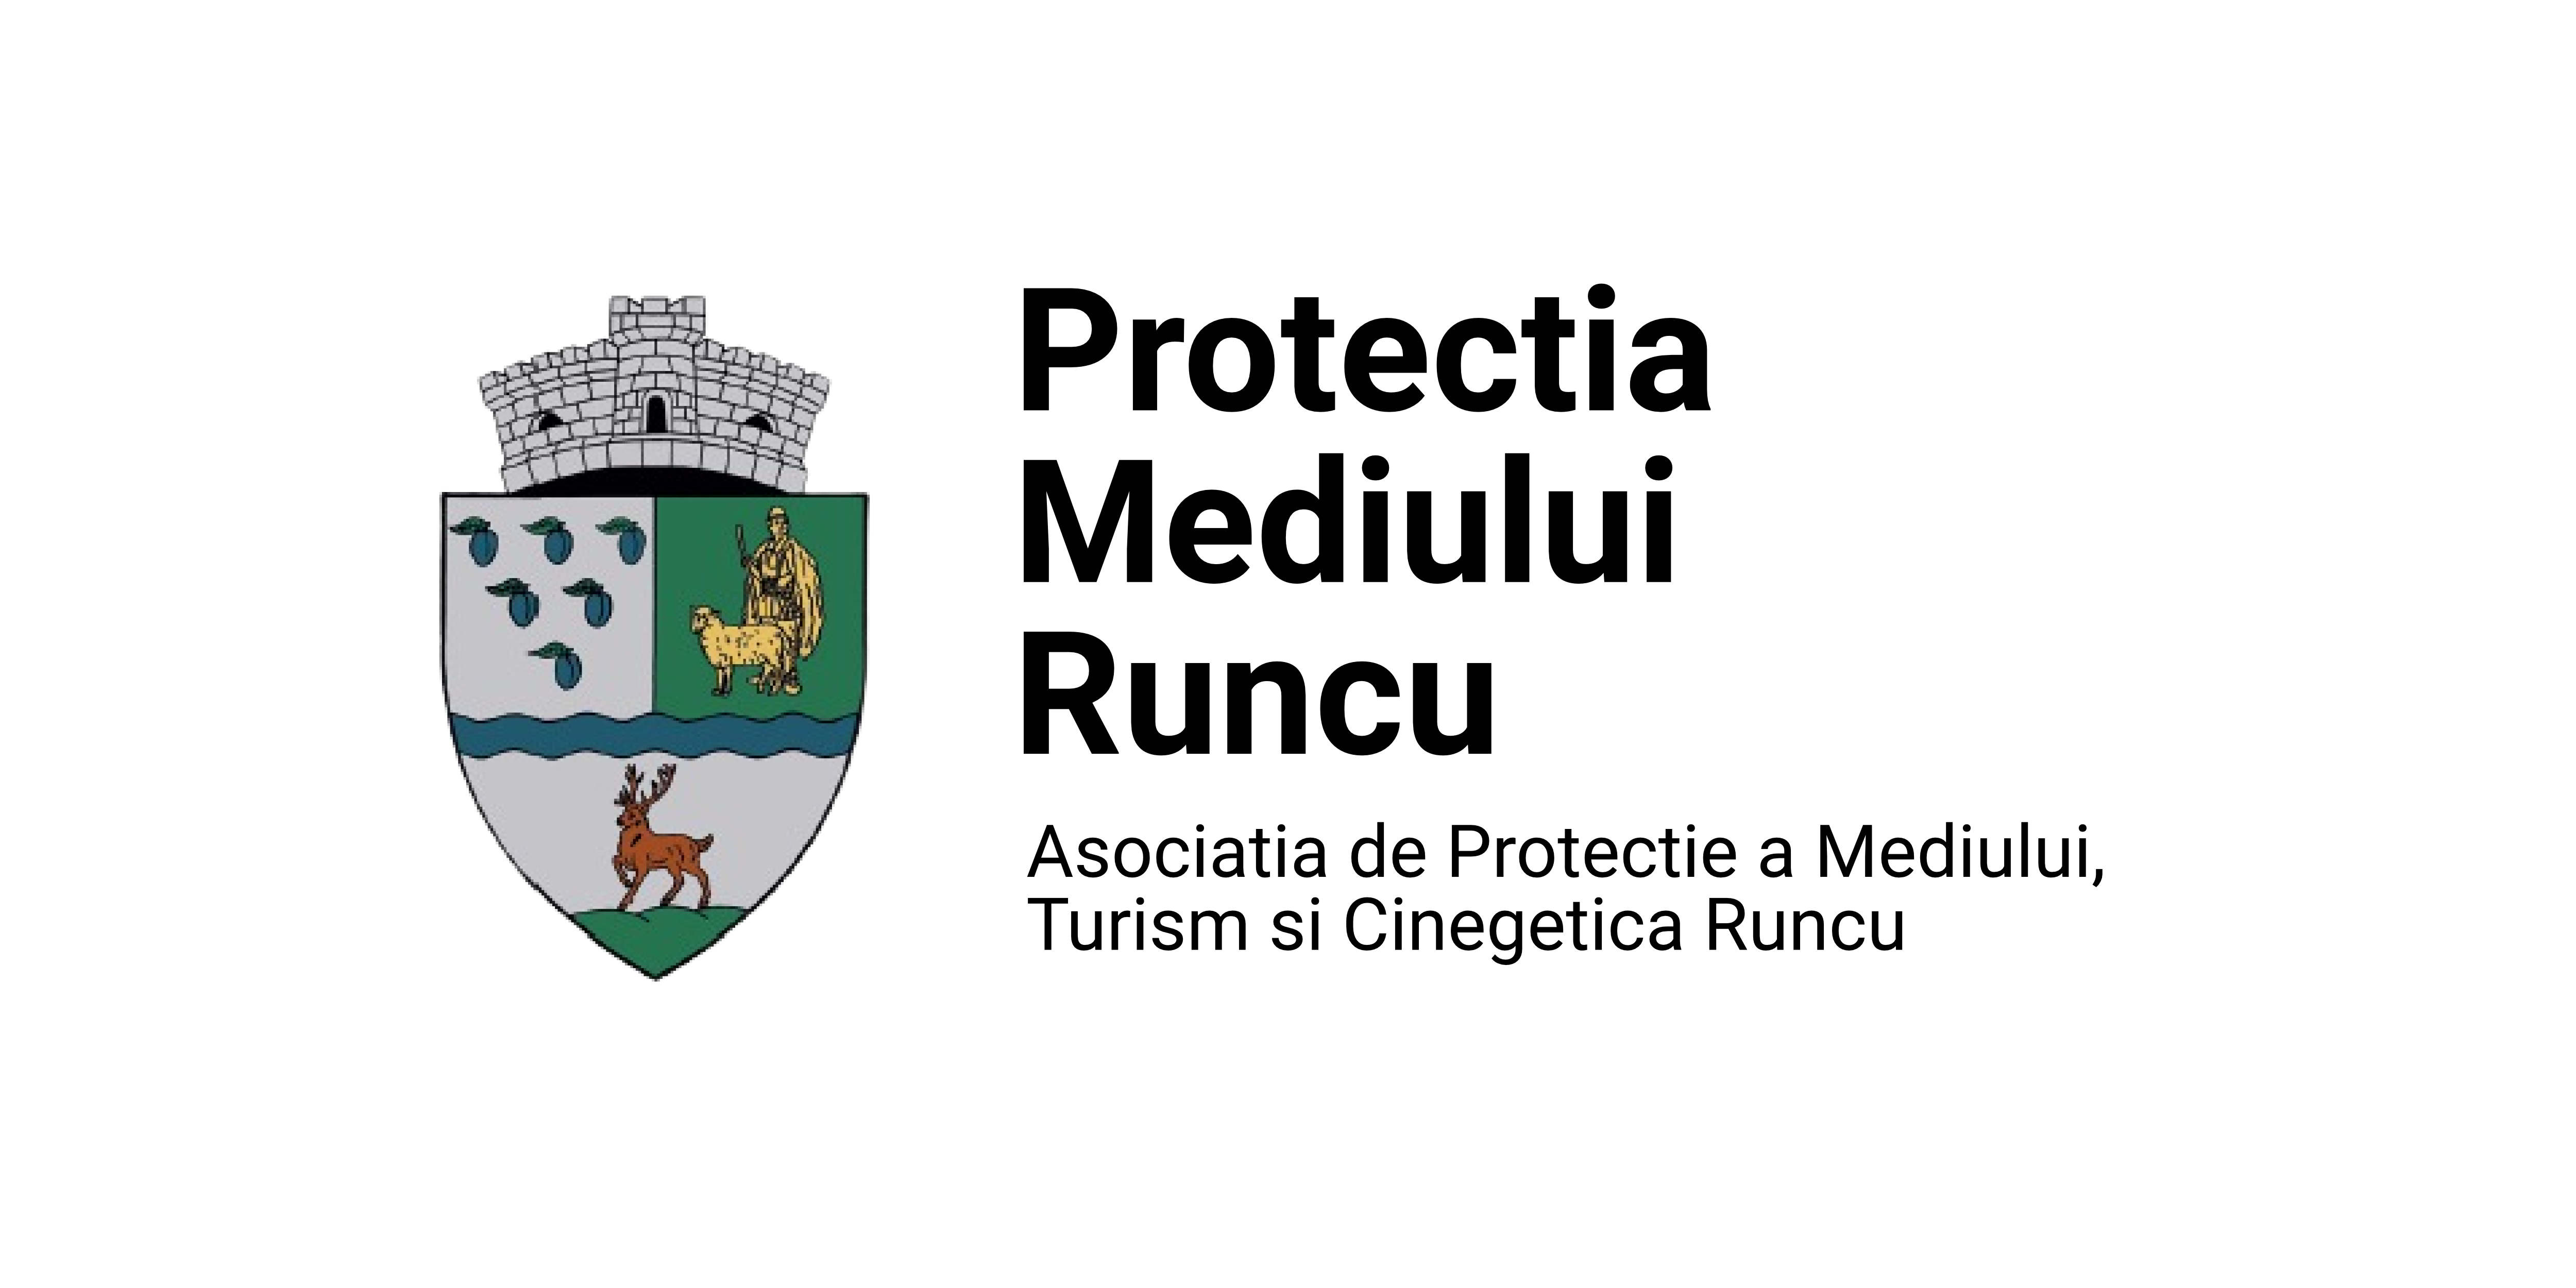 Asocitatia de Protectie a Mediului, Turism si Cinegetica Runcu logo